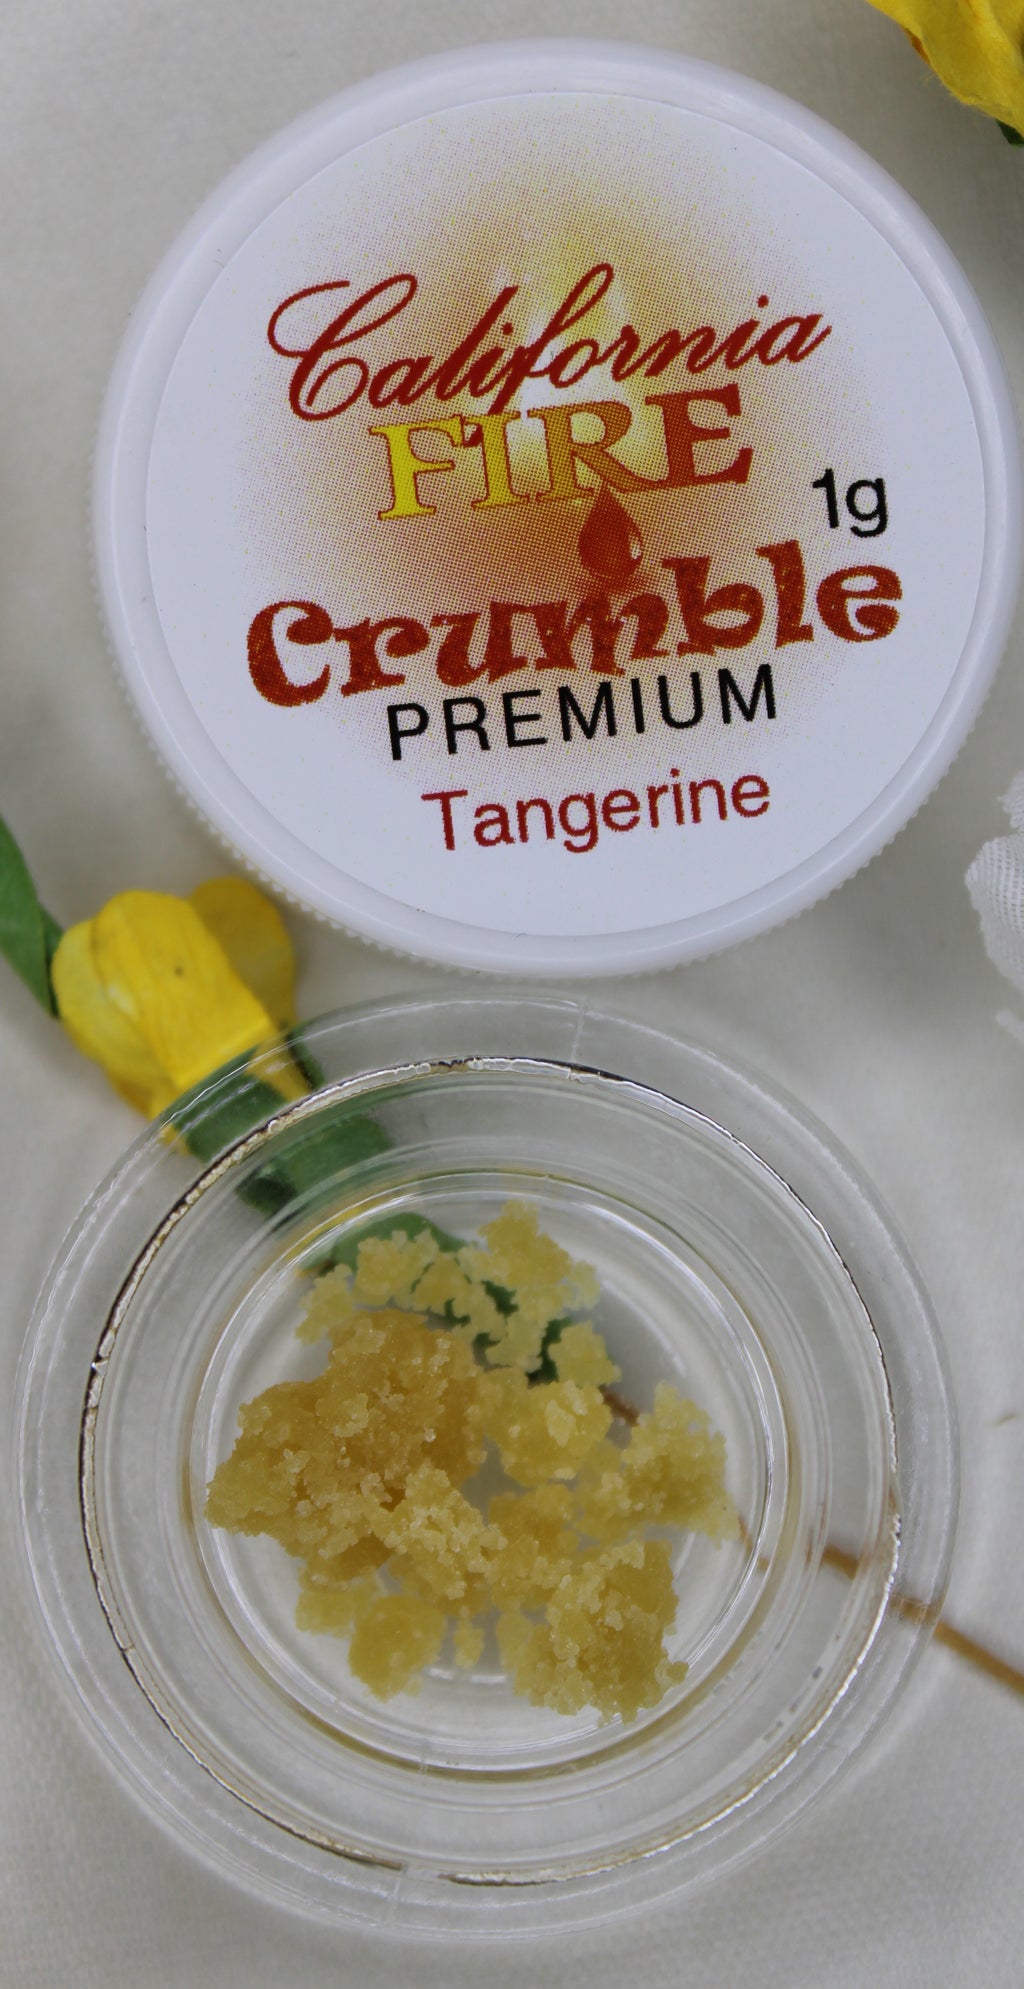 California Fire Premium Crumble "Tangerine" (1g)